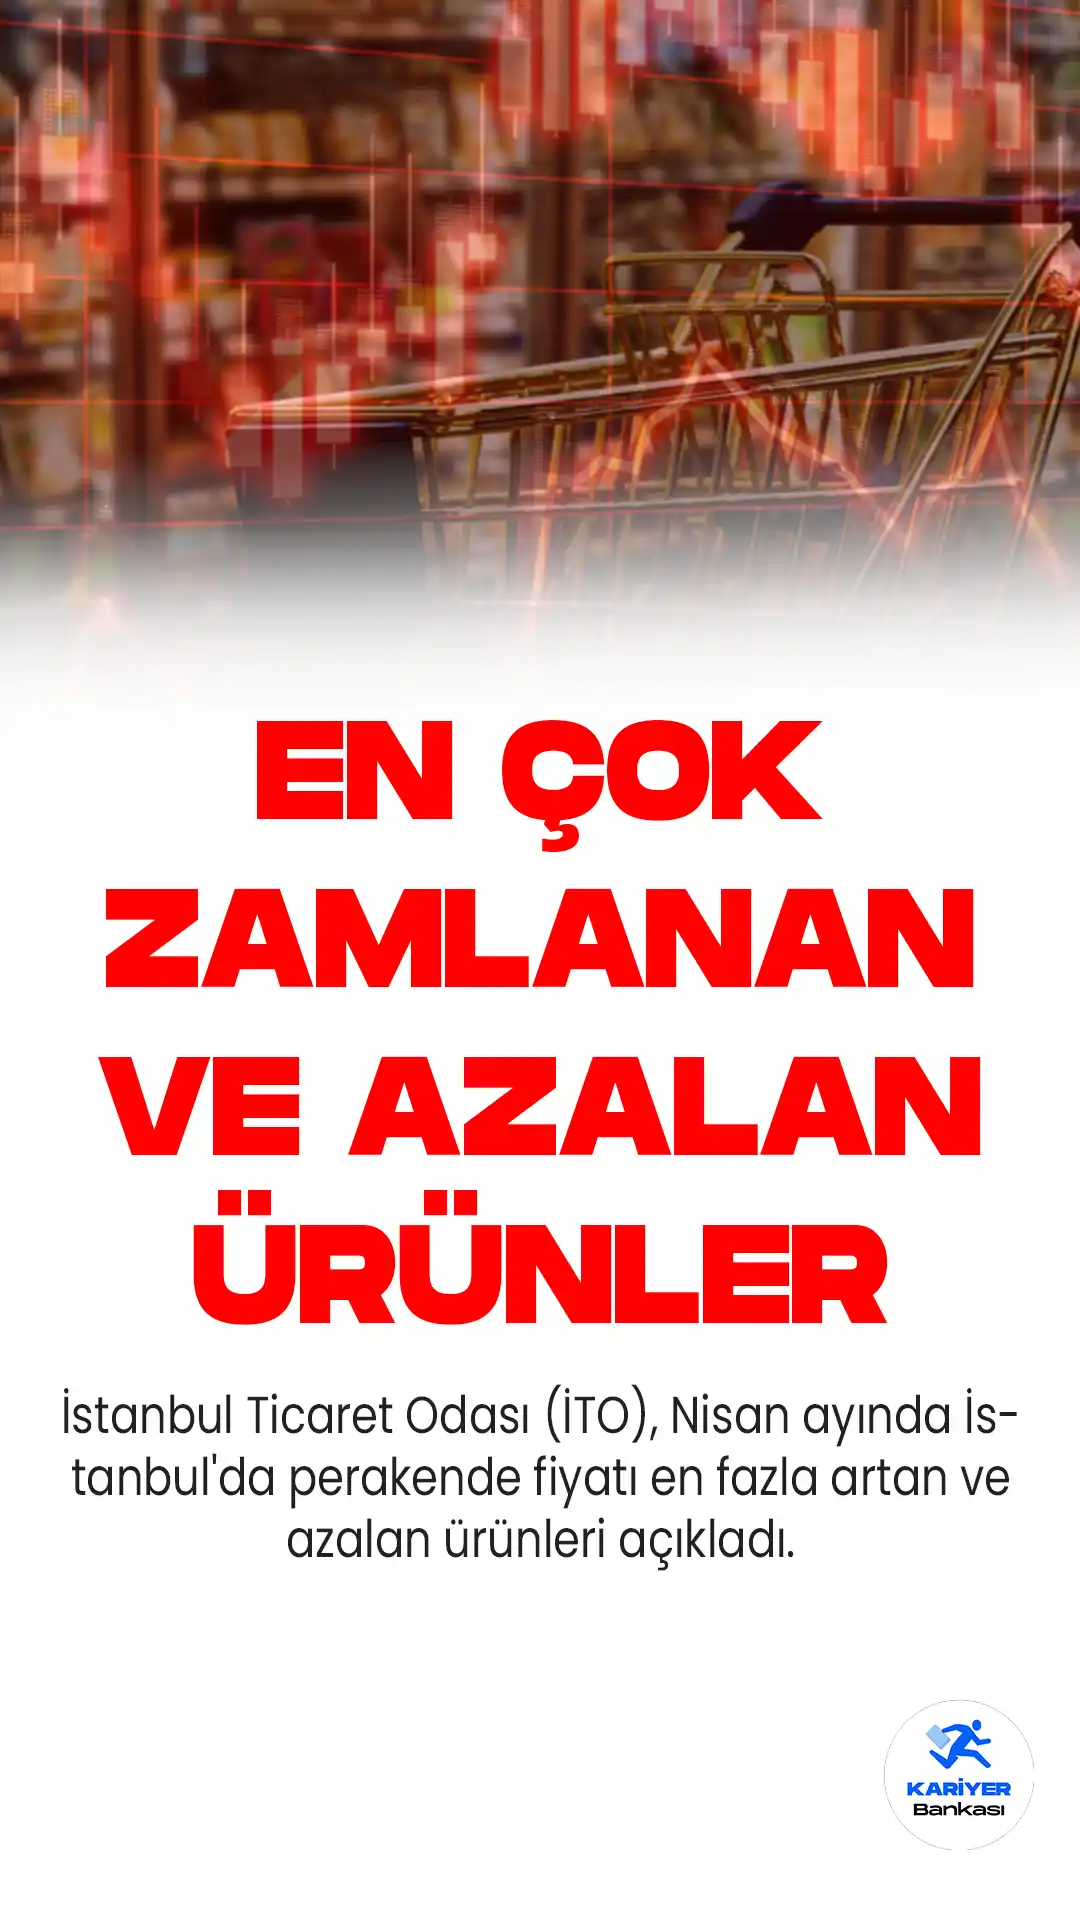 İstanbul Ticaret Odası (İTO), Nisan ayında İstanbul'da perakende fiyatı en fazla artan ve azalan ürünleri açıkladı.